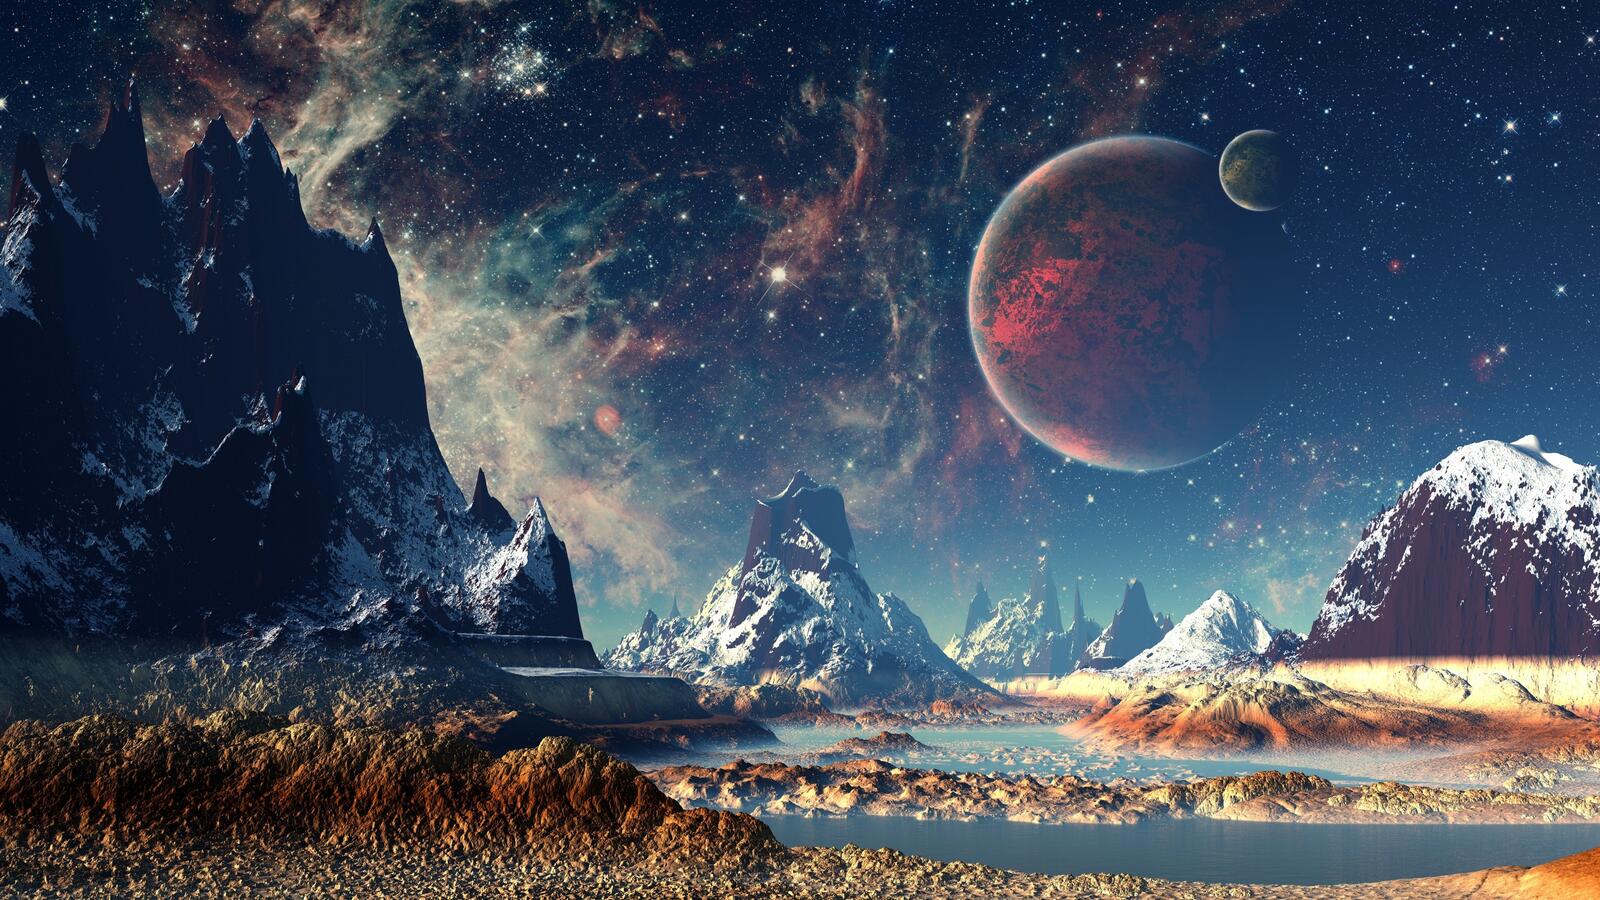 Бесплатное фото Красивая фантастическая картинка с космическими планетами